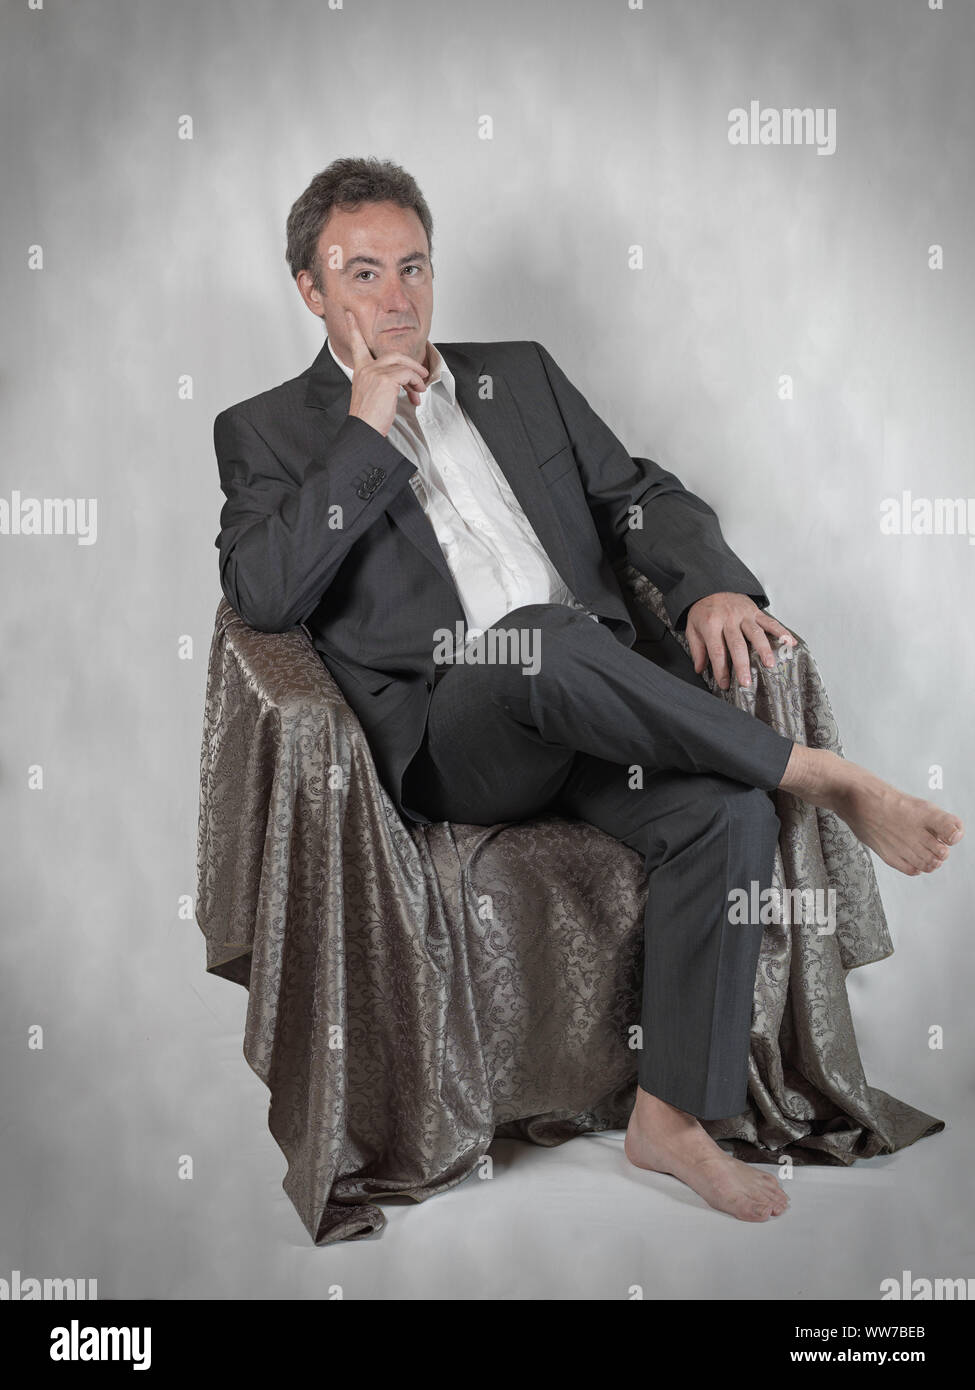 Mann im Anzug aber barfuss, sitzen im Stuhl und sieht nachdenklich aus. Stockfoto